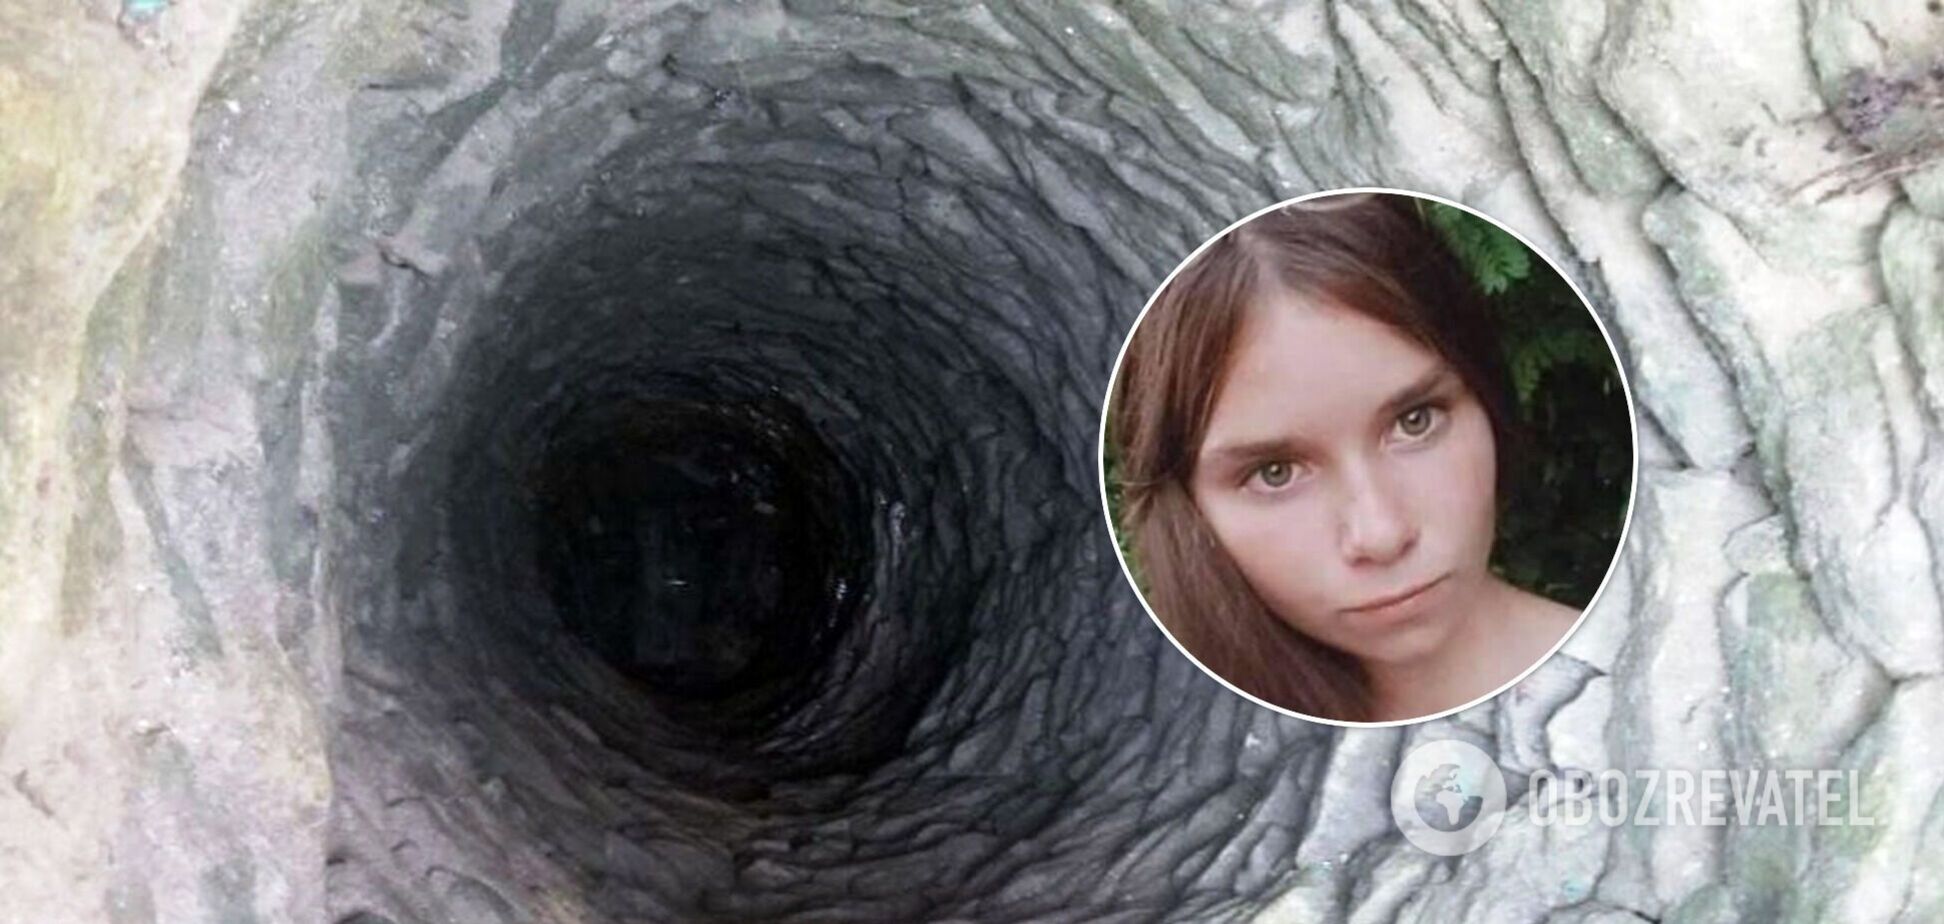 Під Кропивницьким зниклу 16-річну дівчину знайшли мертвою в колодязі. Фото і деталі трагедії